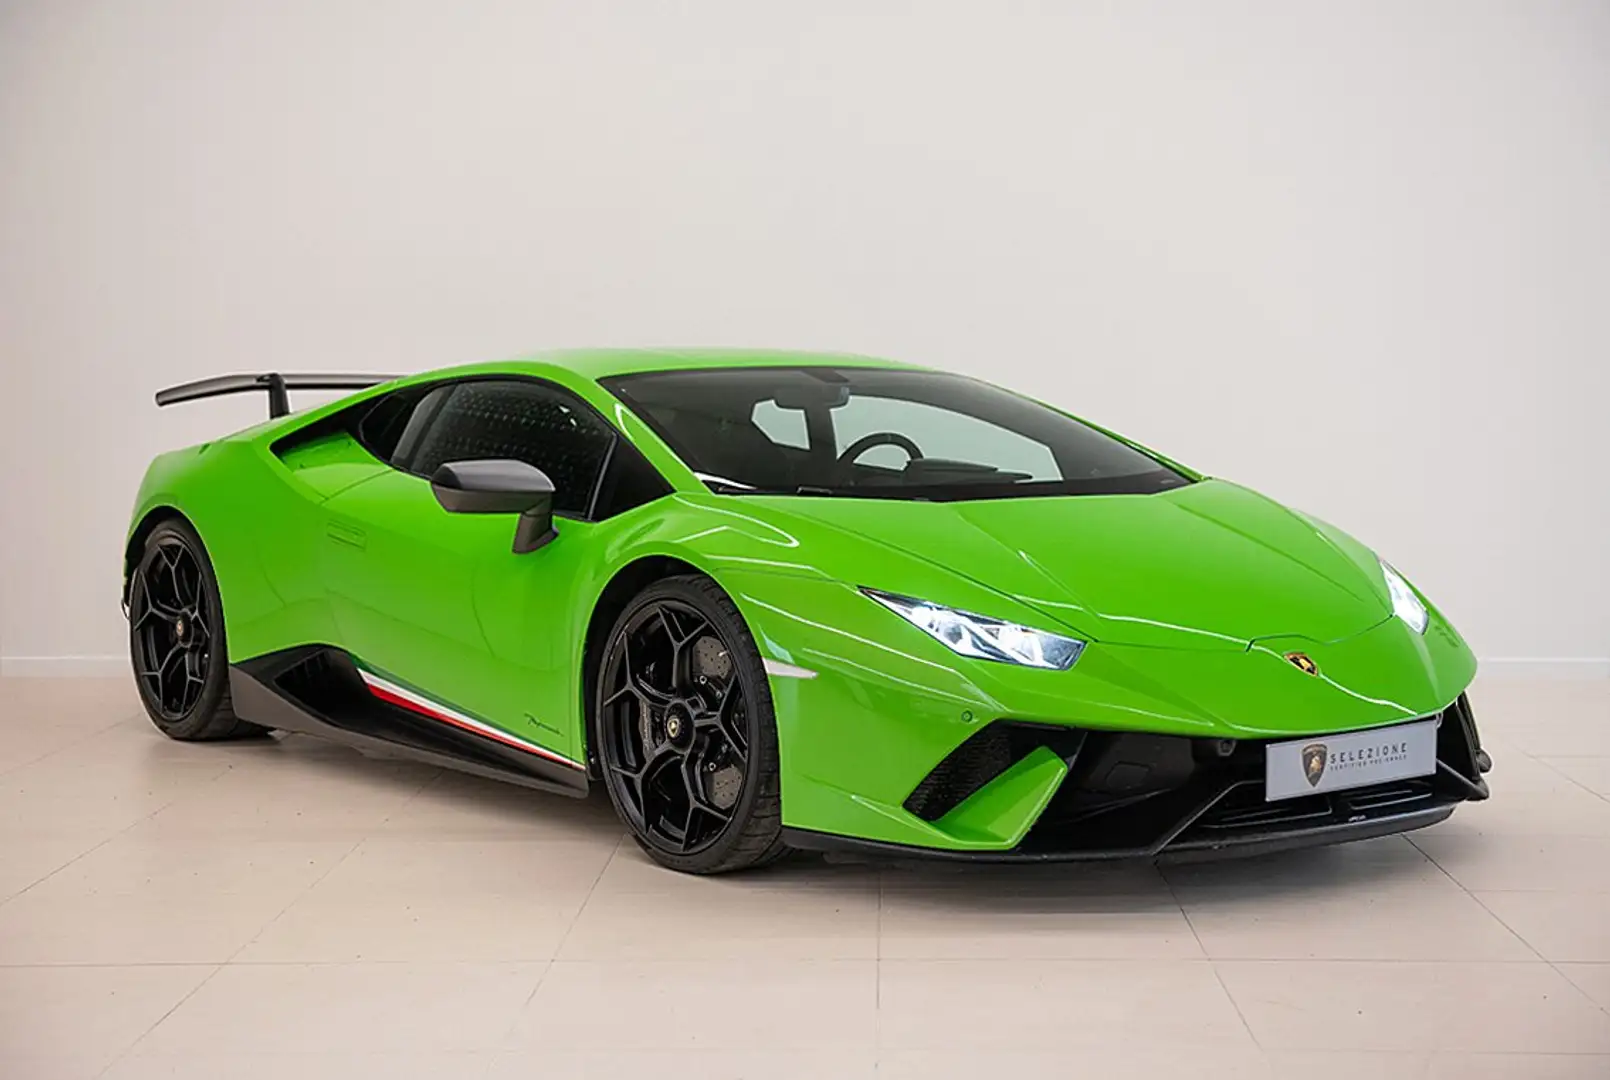 Lamborghini Huracan Coupé in Groen in Drogenbos voor € 285.000,-